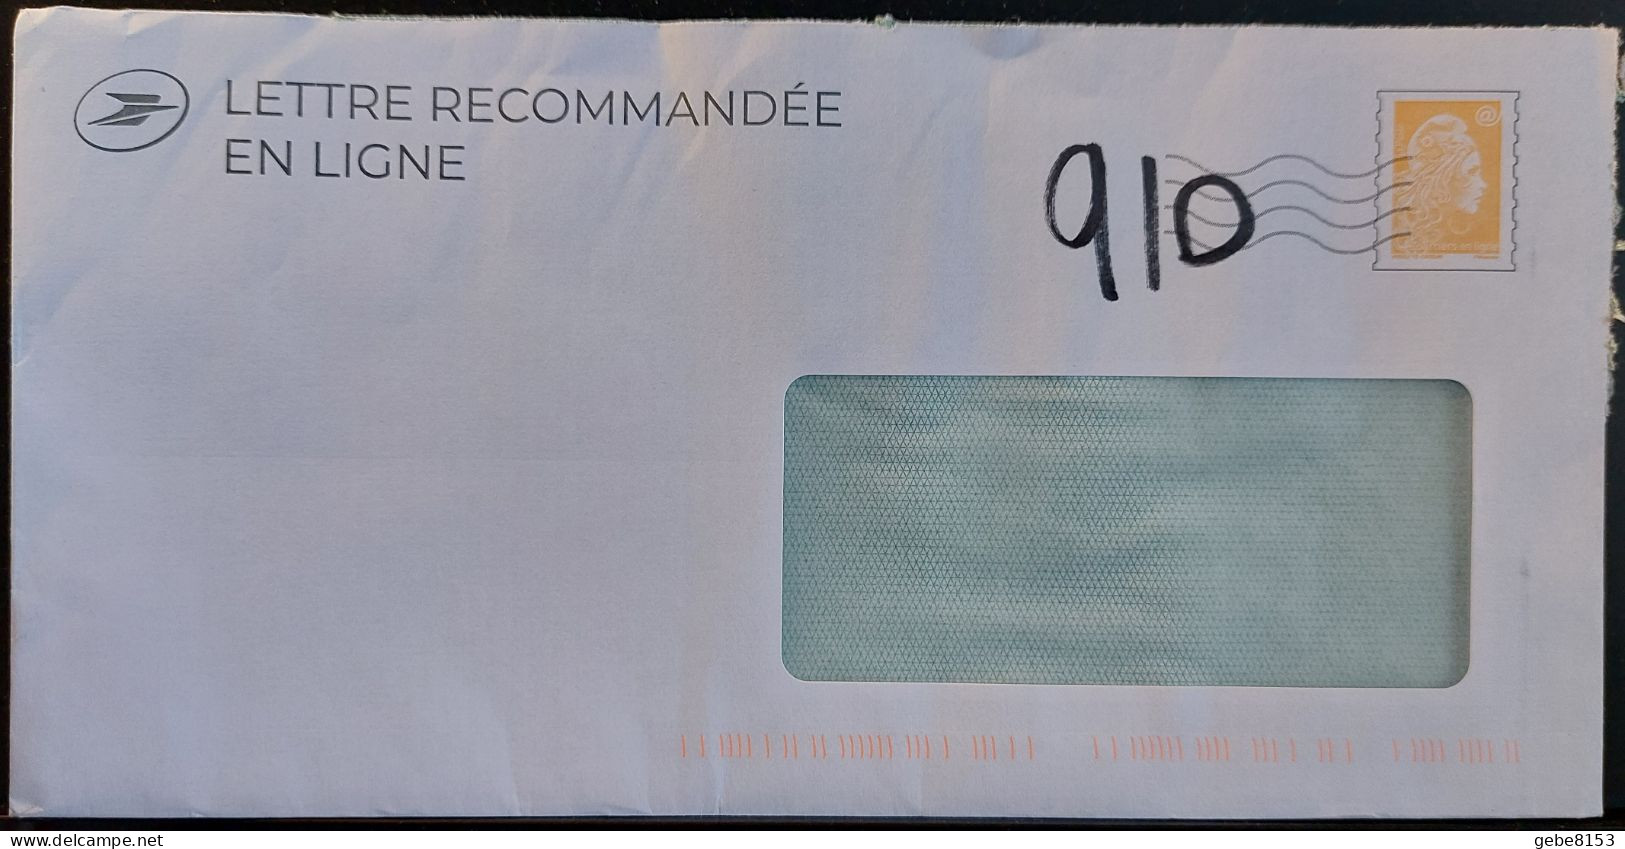 Lettre Recommandée En Ligne Prétimbrée Marianne L'engagée Jaune + Code 910 Ajouté Manuellement Au Marker - PAP : Antwoord /Marianne L'Engagée